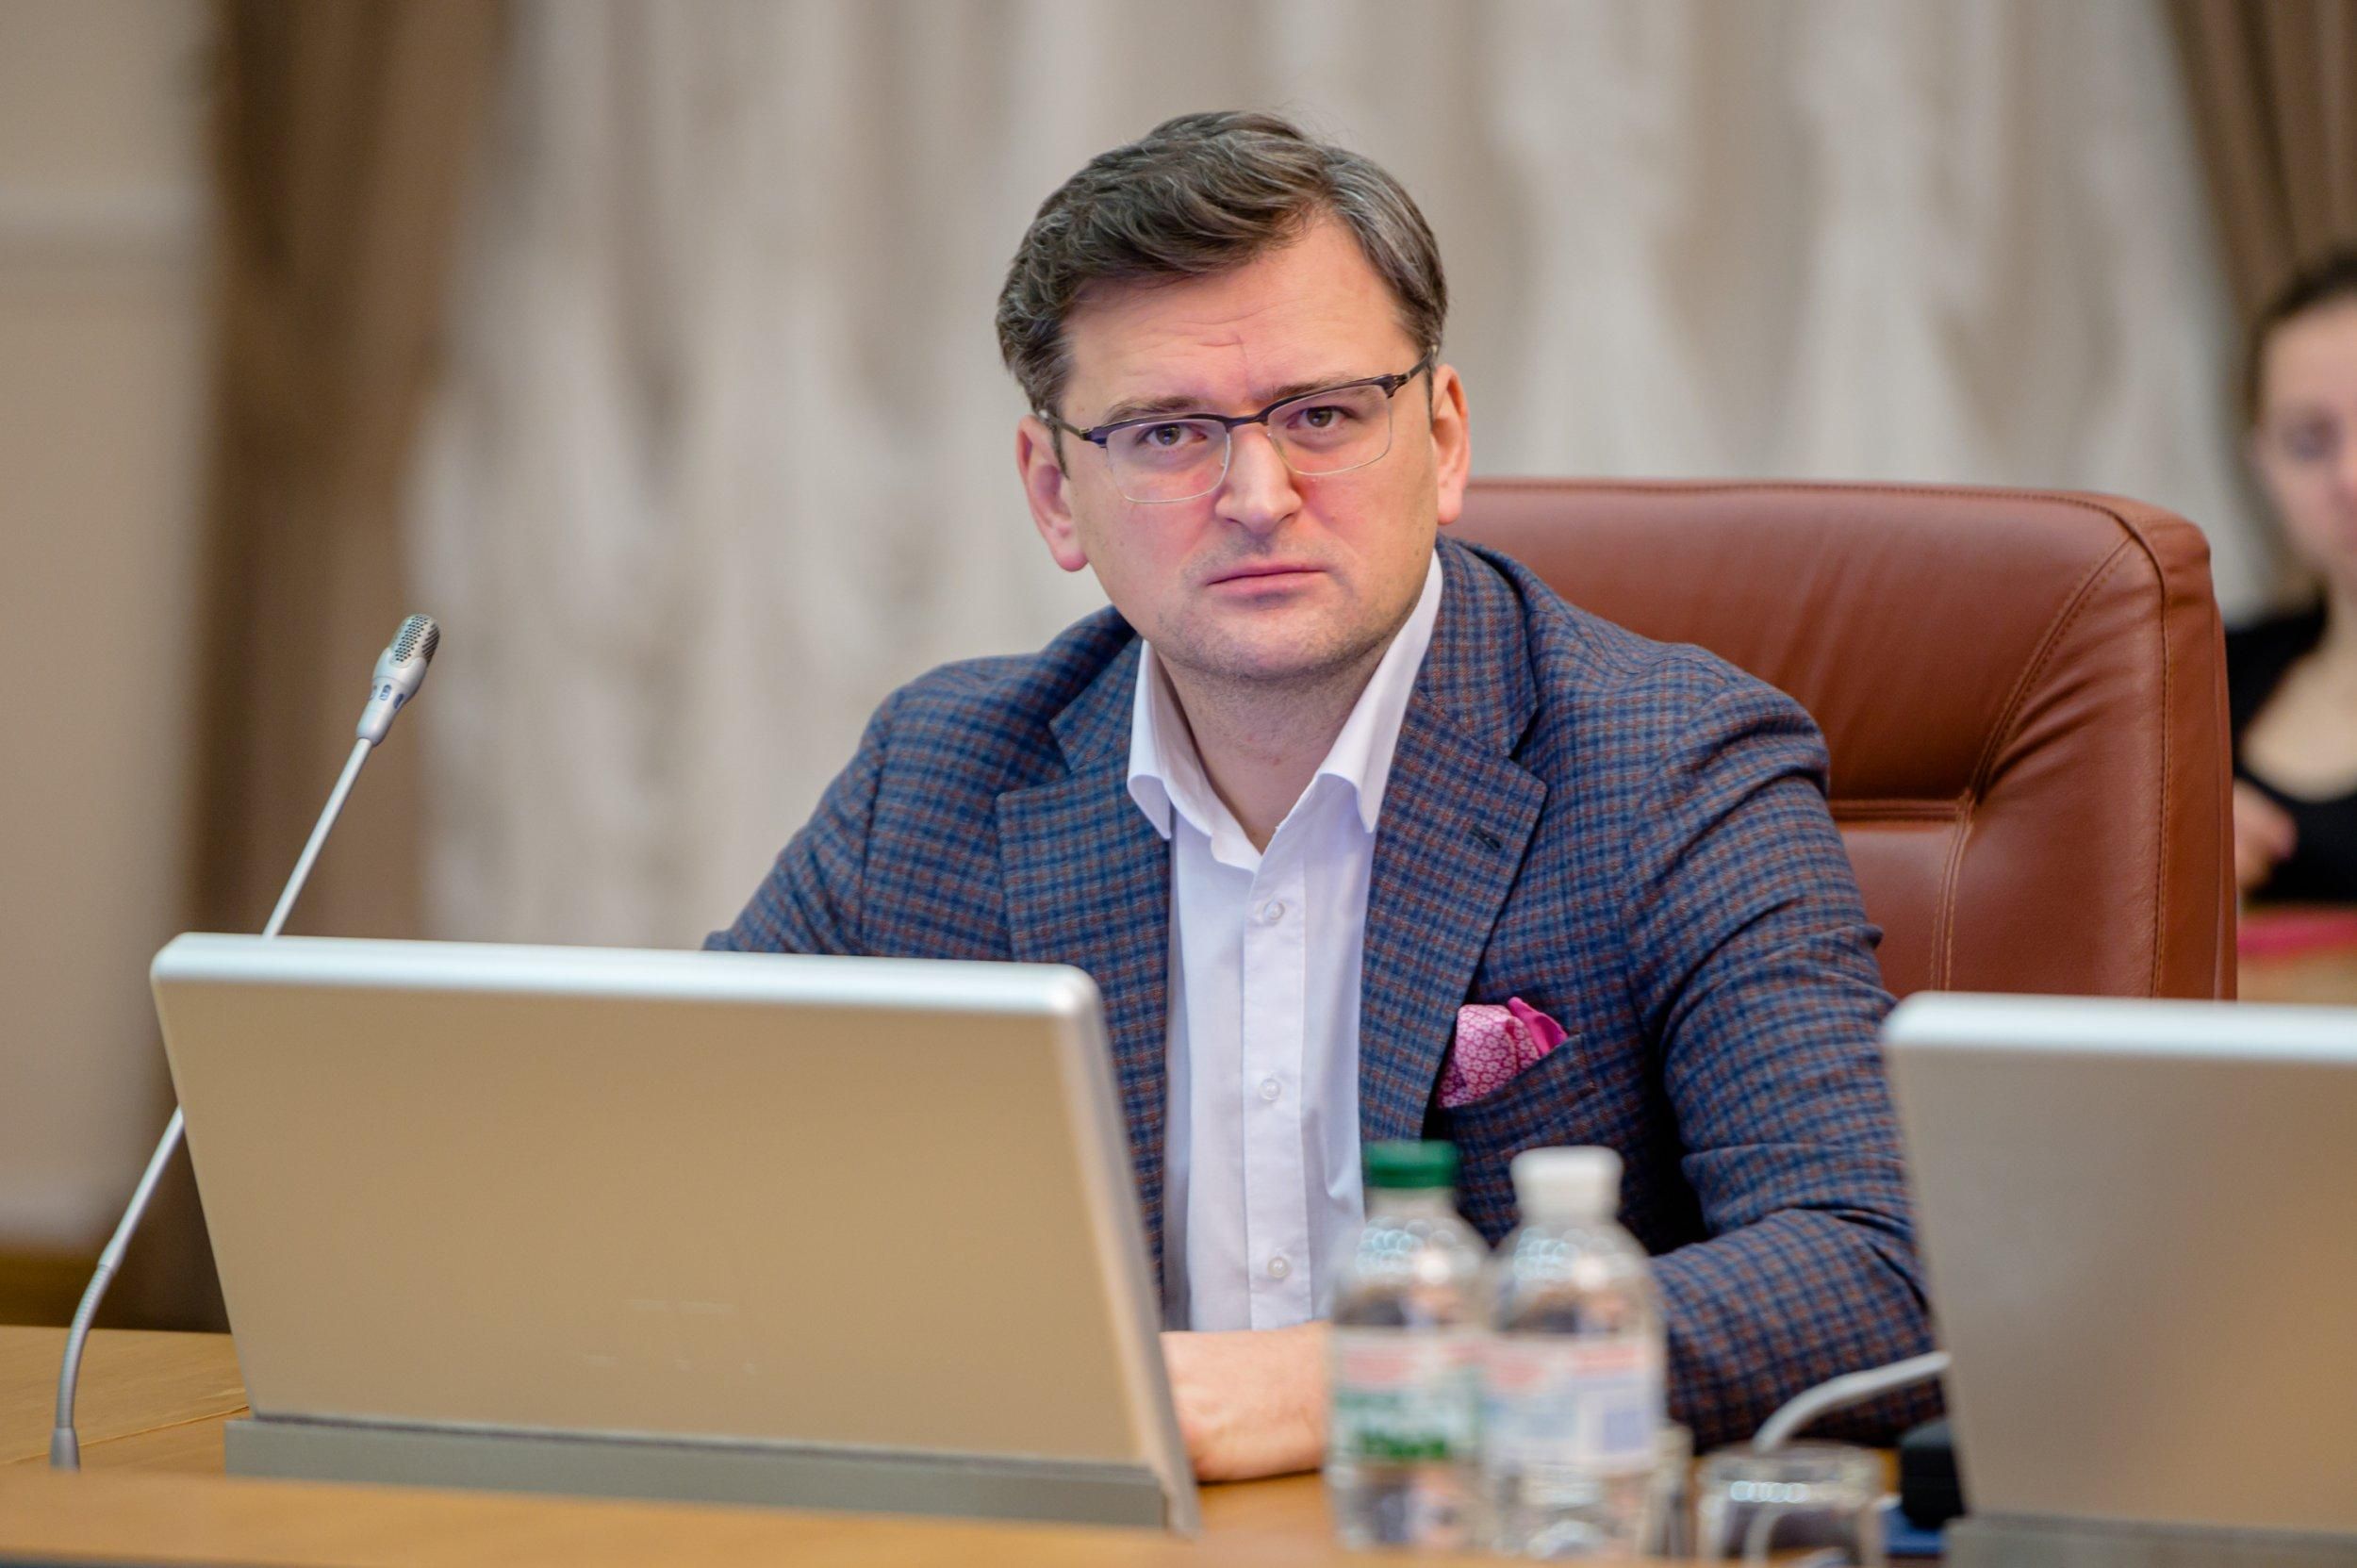 Кулеба упрекнул ЕС за санкции по делу Навального, а не Крыма